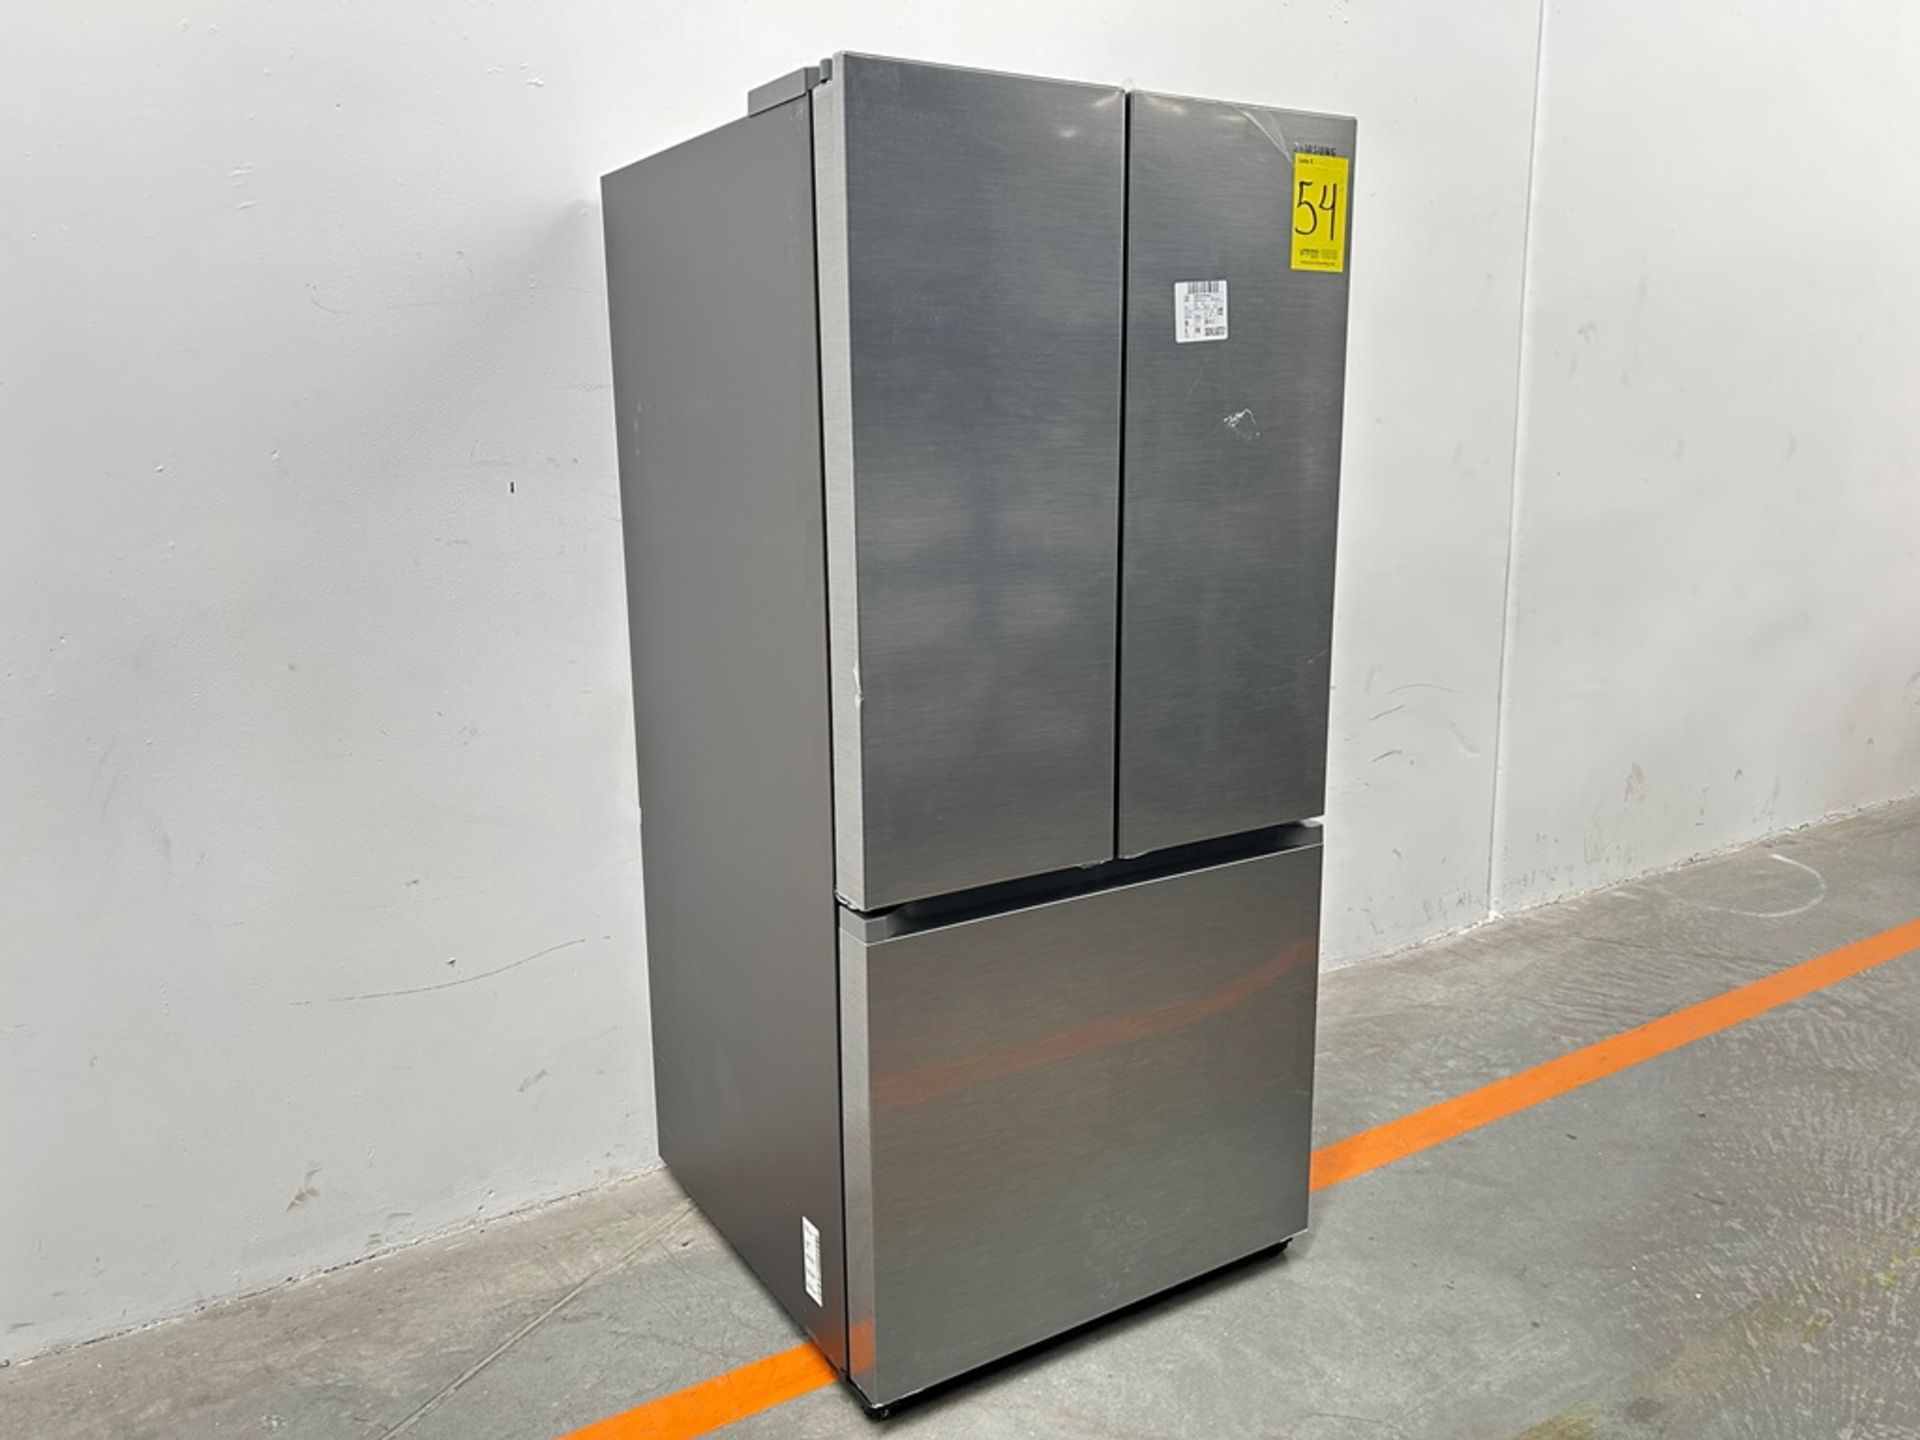 (NUEVO) Refrigerador Marca SAMSUNG, Modelo RF25C5151S9, Serie 00634V, Color GRIS - Image 3 of 11